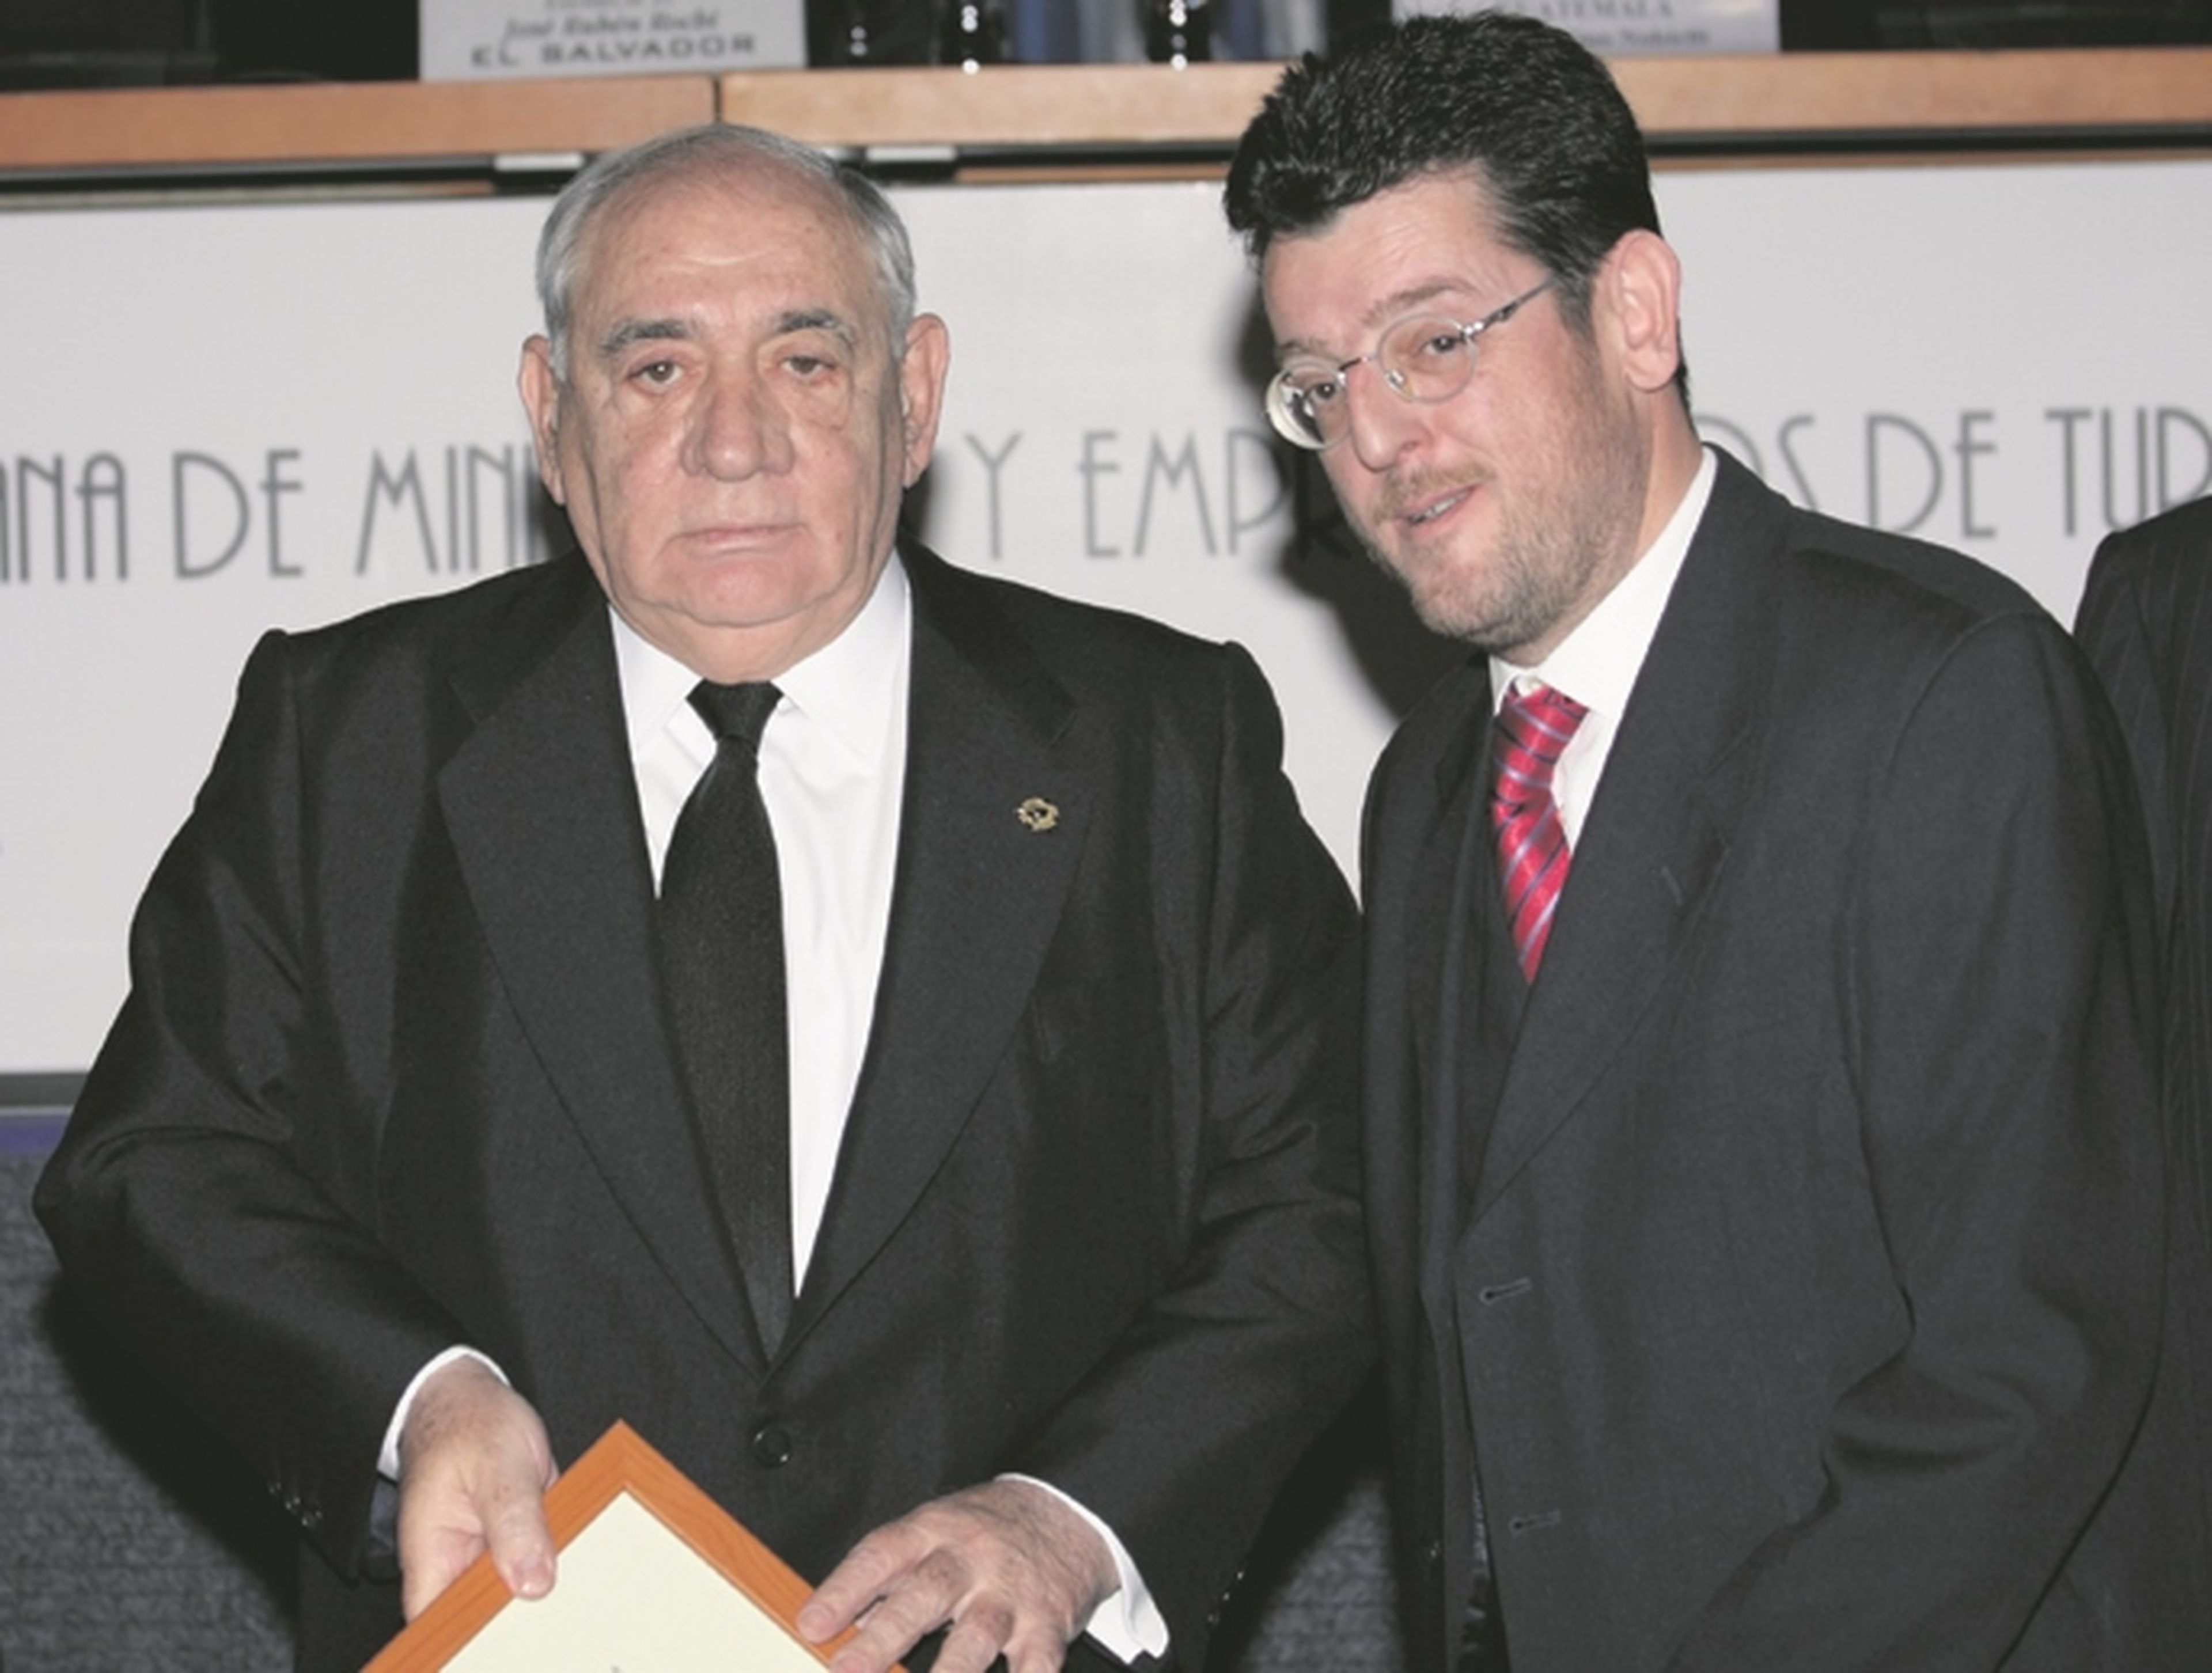 Isidoro Álvarez, como presidente de El Corte Inglés, recibió la Insignia y Diploma de CIMET del Presidente de la Conferencia Iberoamericana de Ministros y Empresarios de Turismo